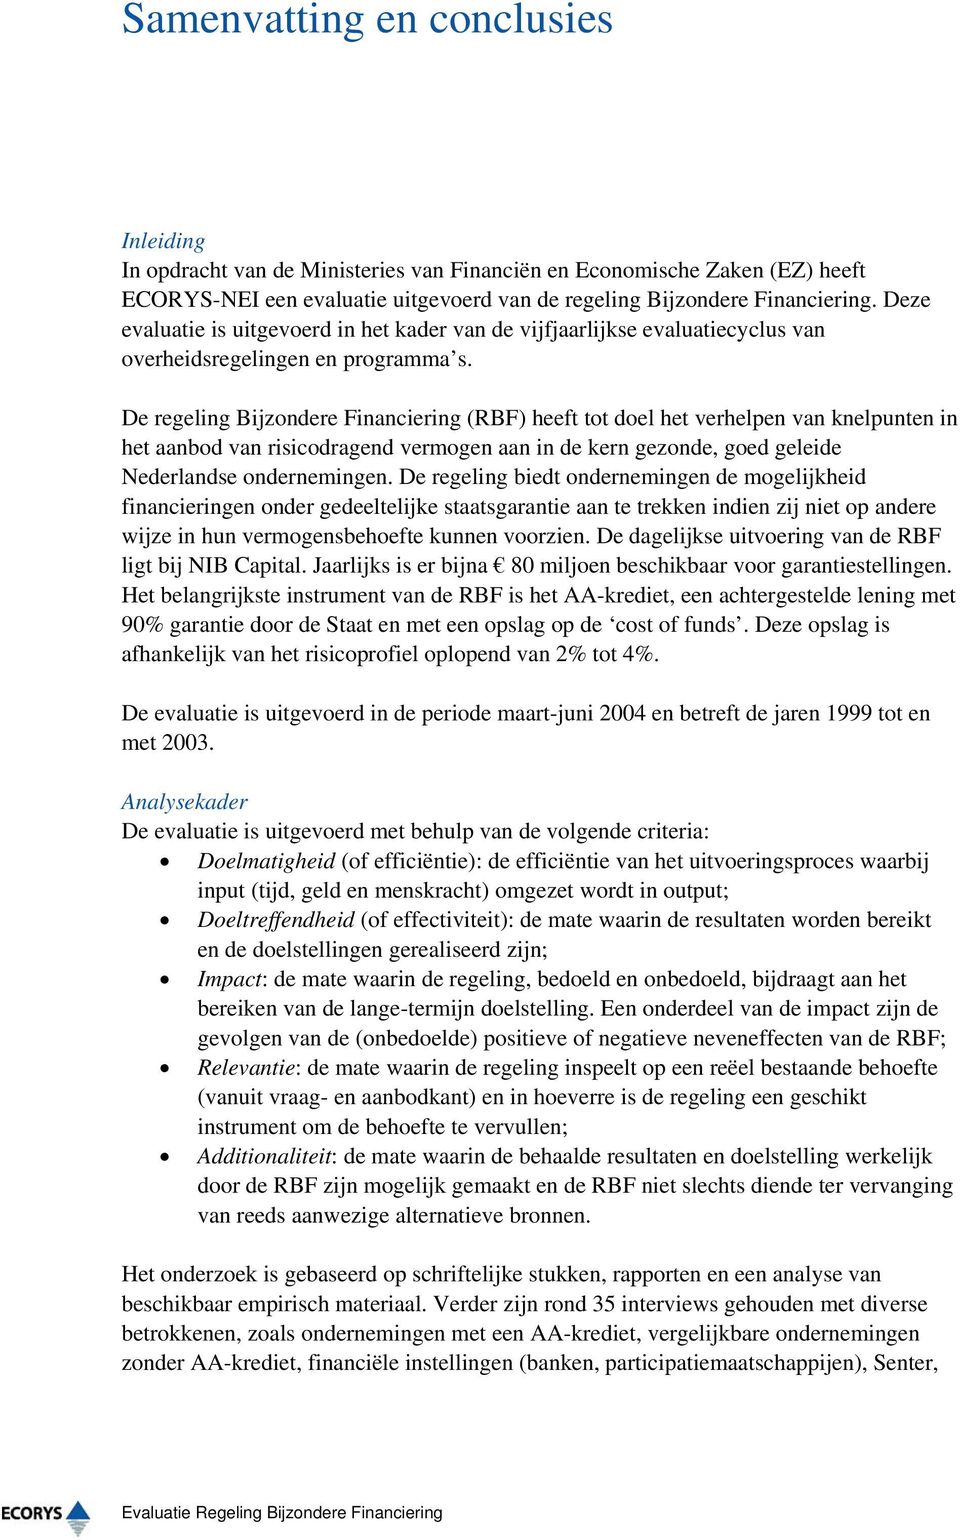 De regeling Bijzondere Financiering (RBF) heeft tot doel het verhelpen van knelpunten in het aanbod van risicodragend vermogen aan in de kern gezonde, goed geleide Nederlandse ondernemingen.